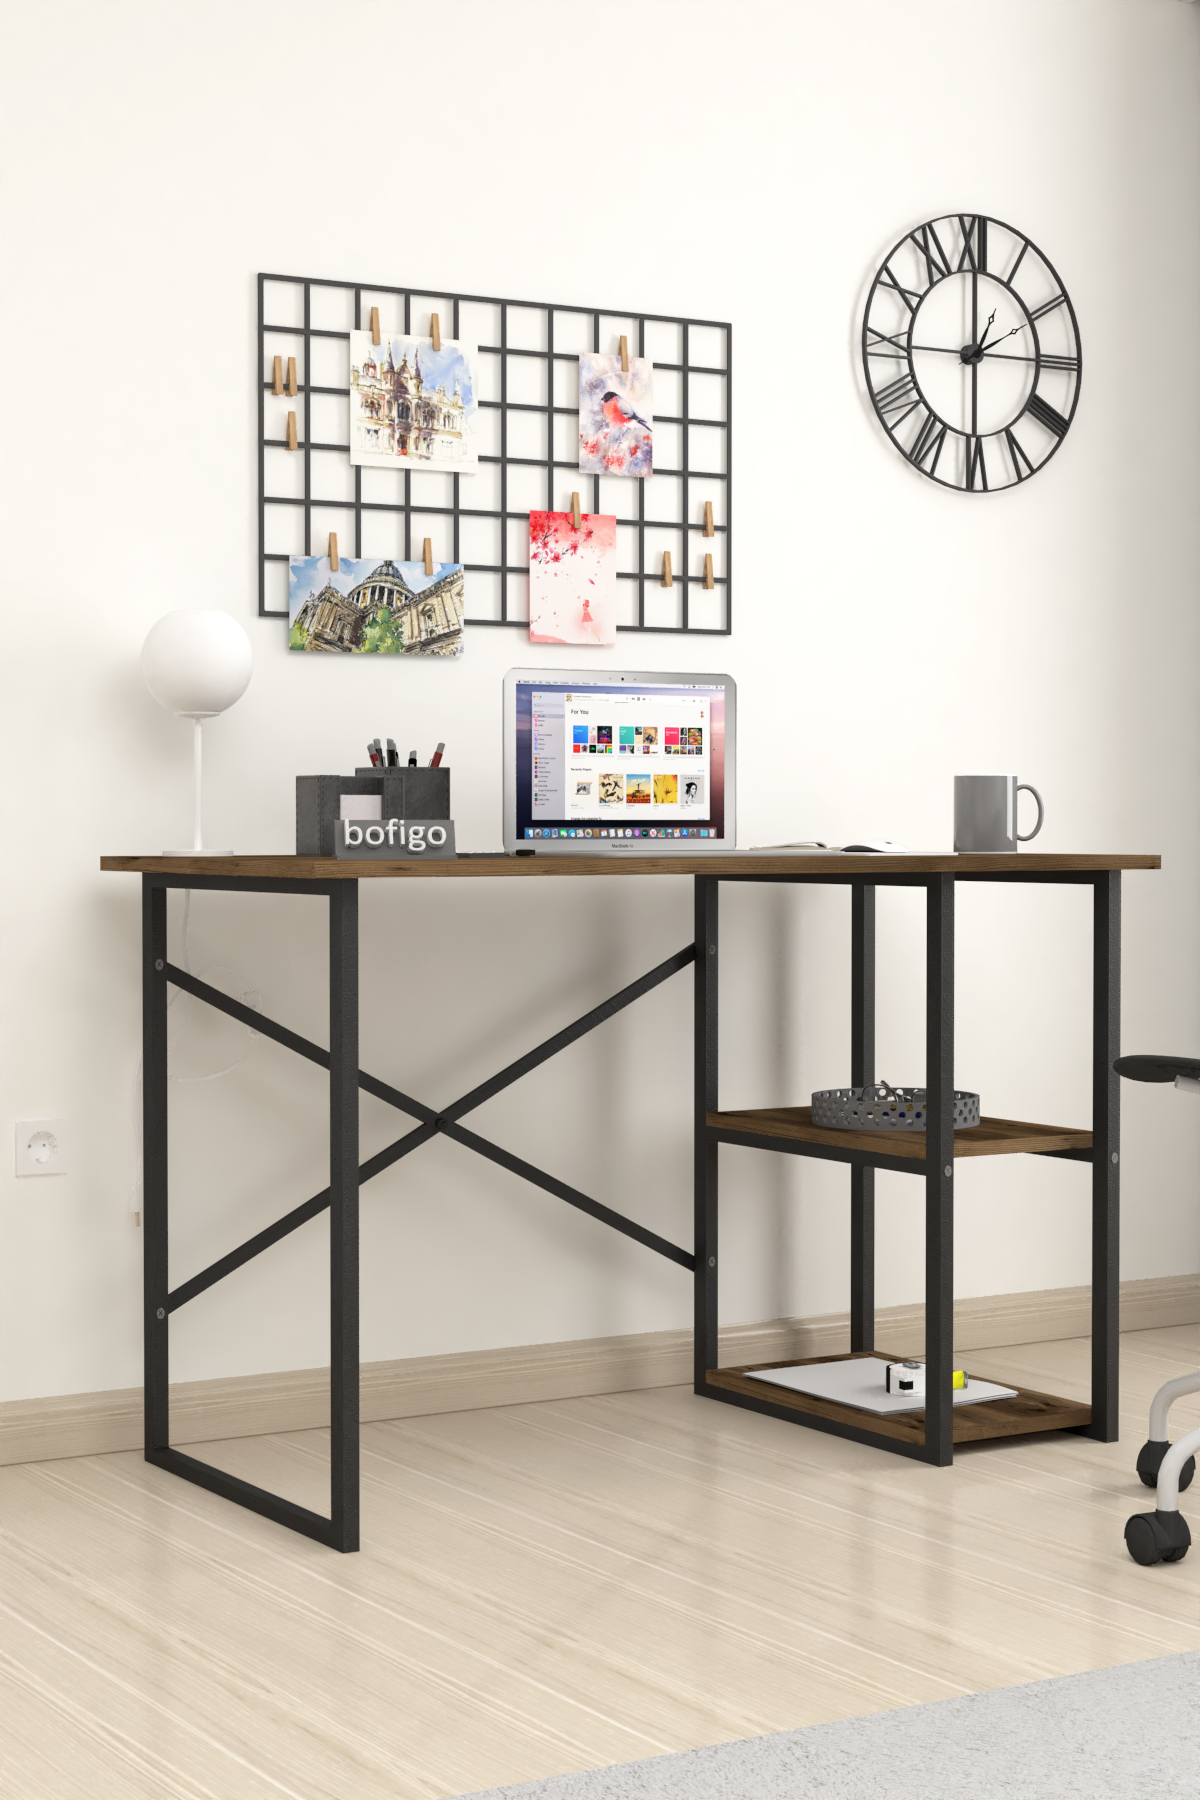 Bofigo 2 Shelf Desk 60x120 cm Patik